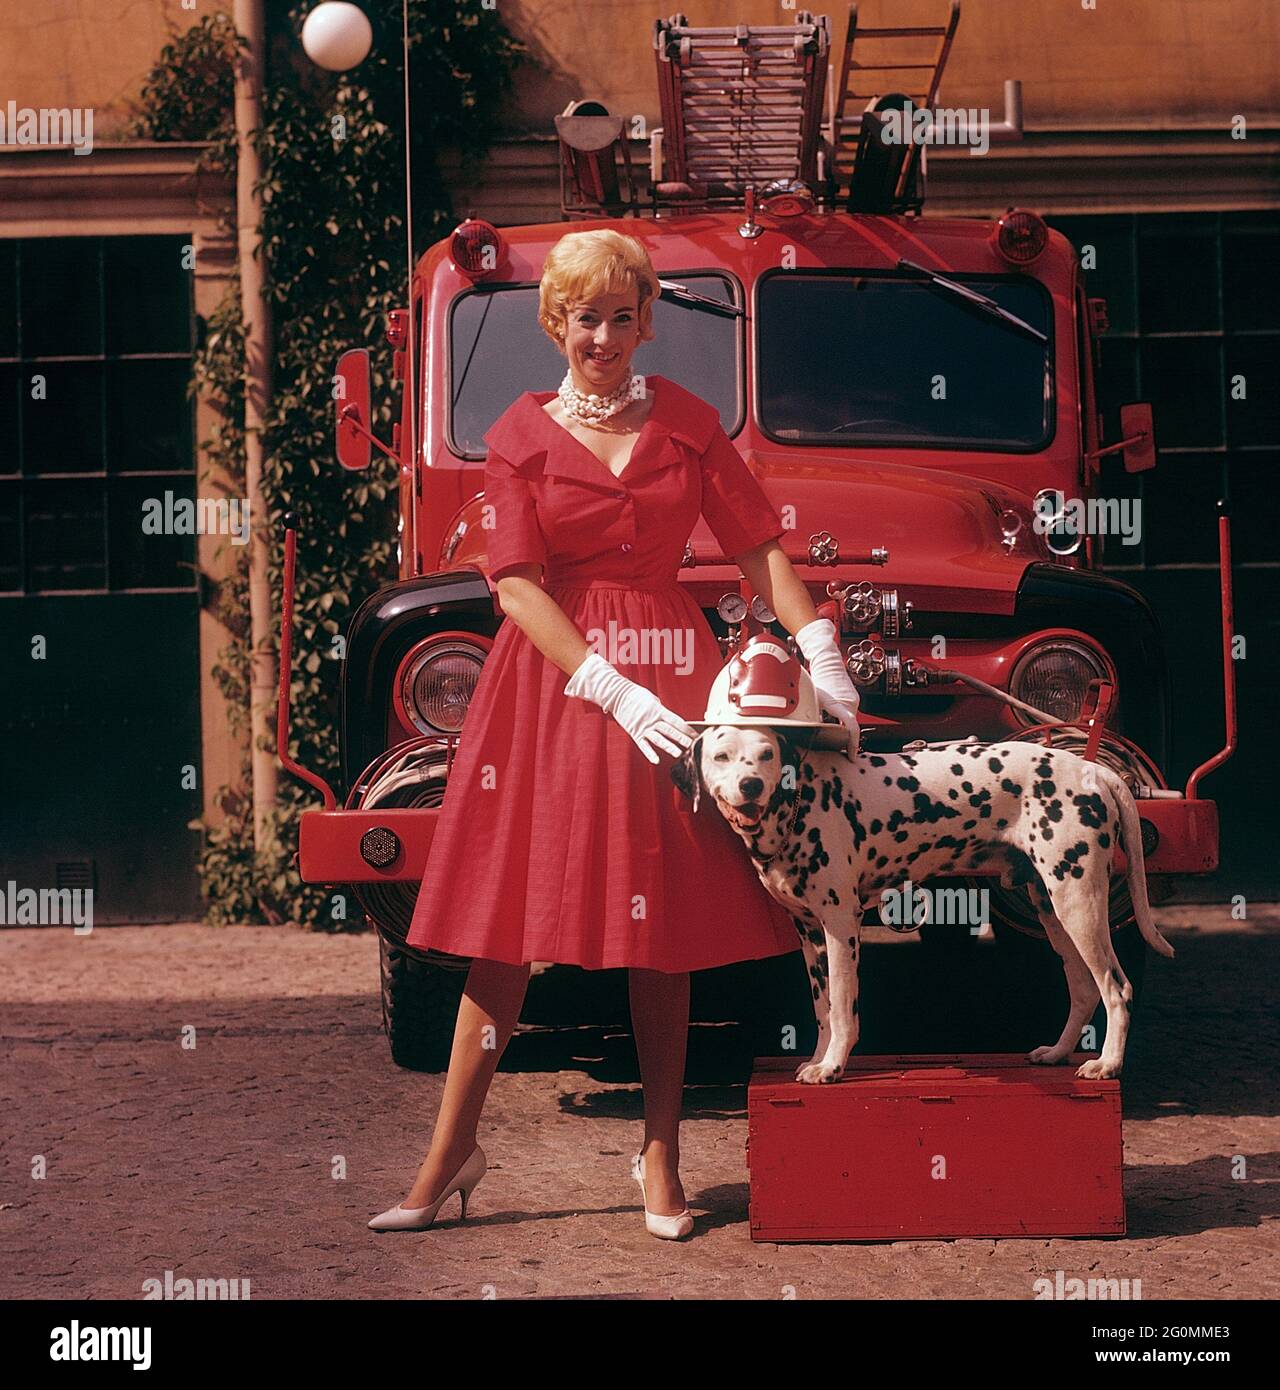 Alla moda negli anni '50. Una giovane donna in un abito rosso, guanti  bianchi e scarpe bianche è in piedi di fronte a un camion da fuoco Ford  insieme a un cane